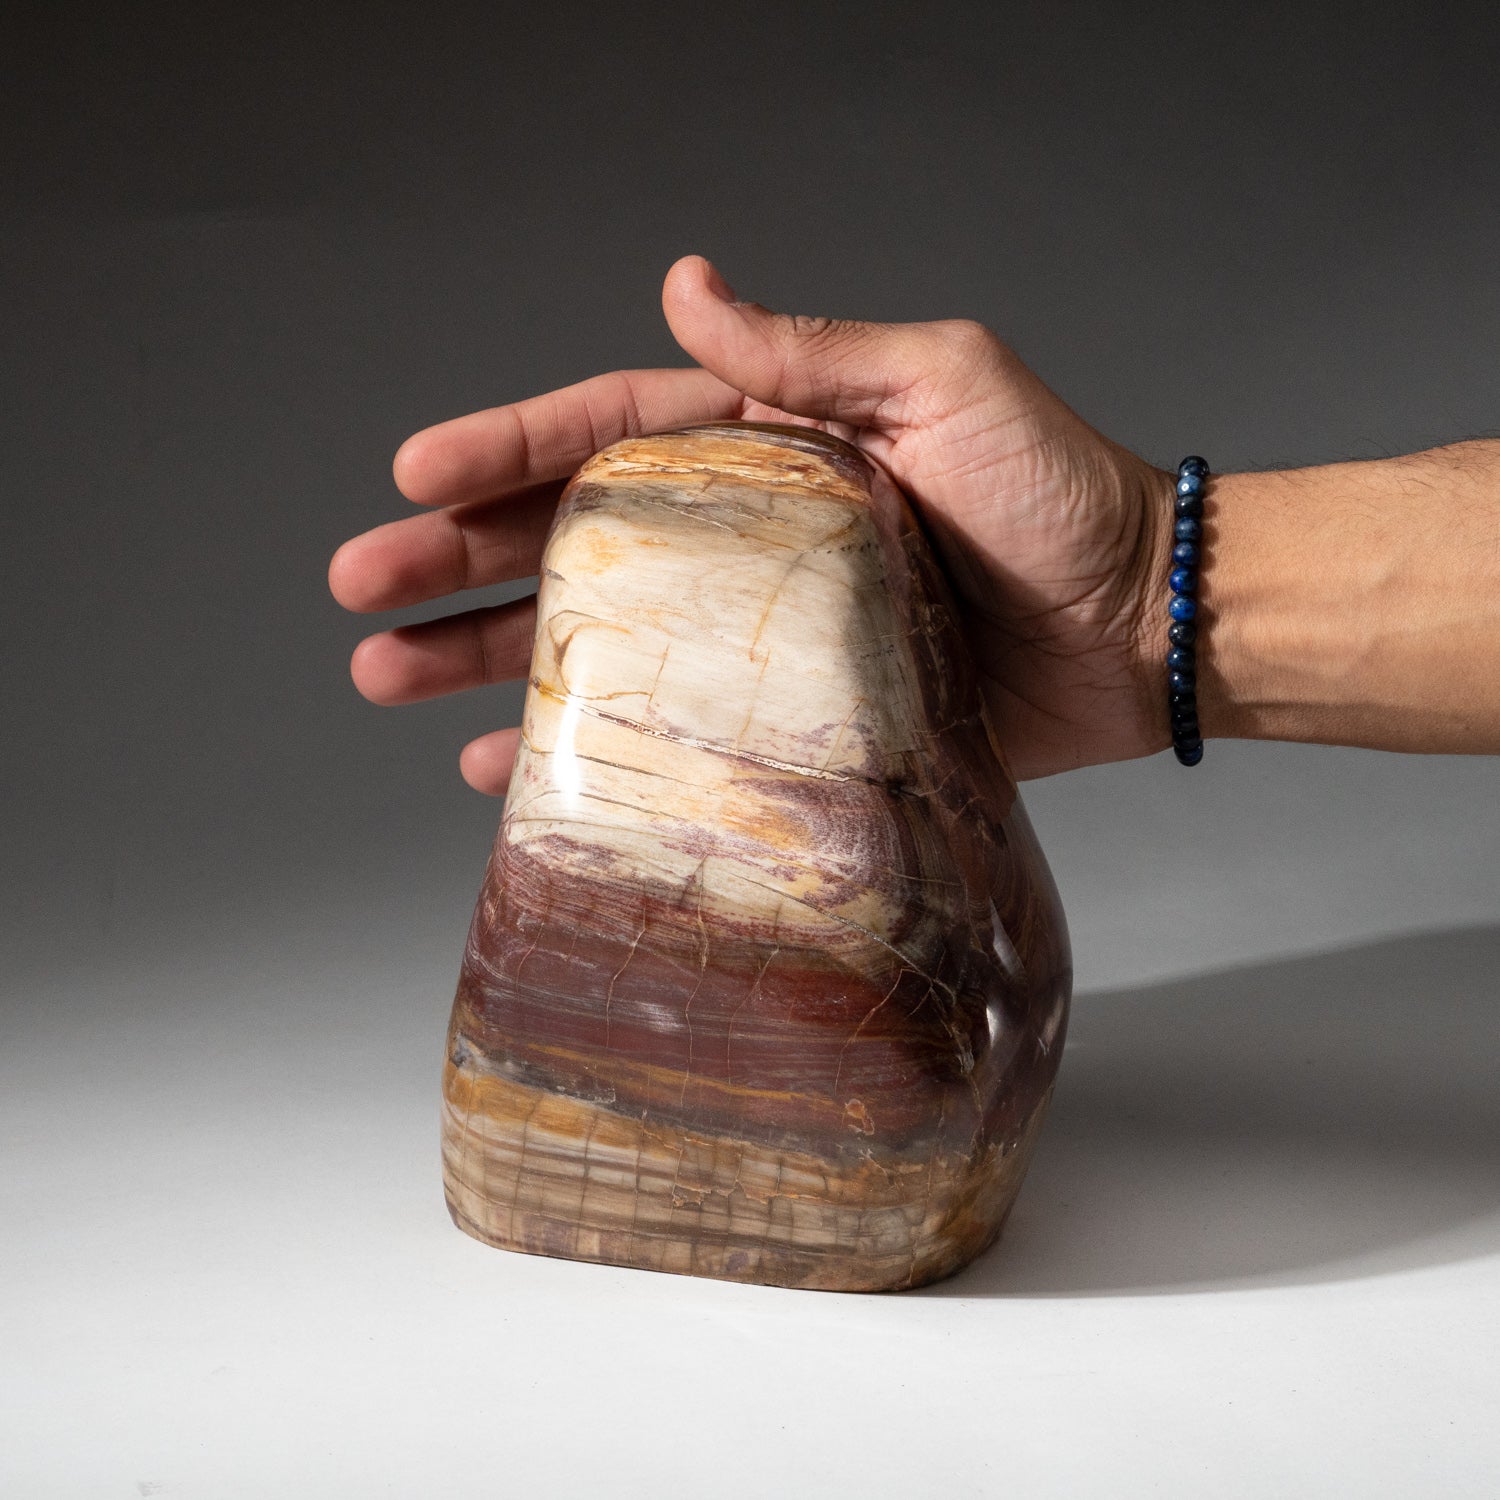 Polished Petrified Wood Freeform from Madagascar (8.2 lbs)